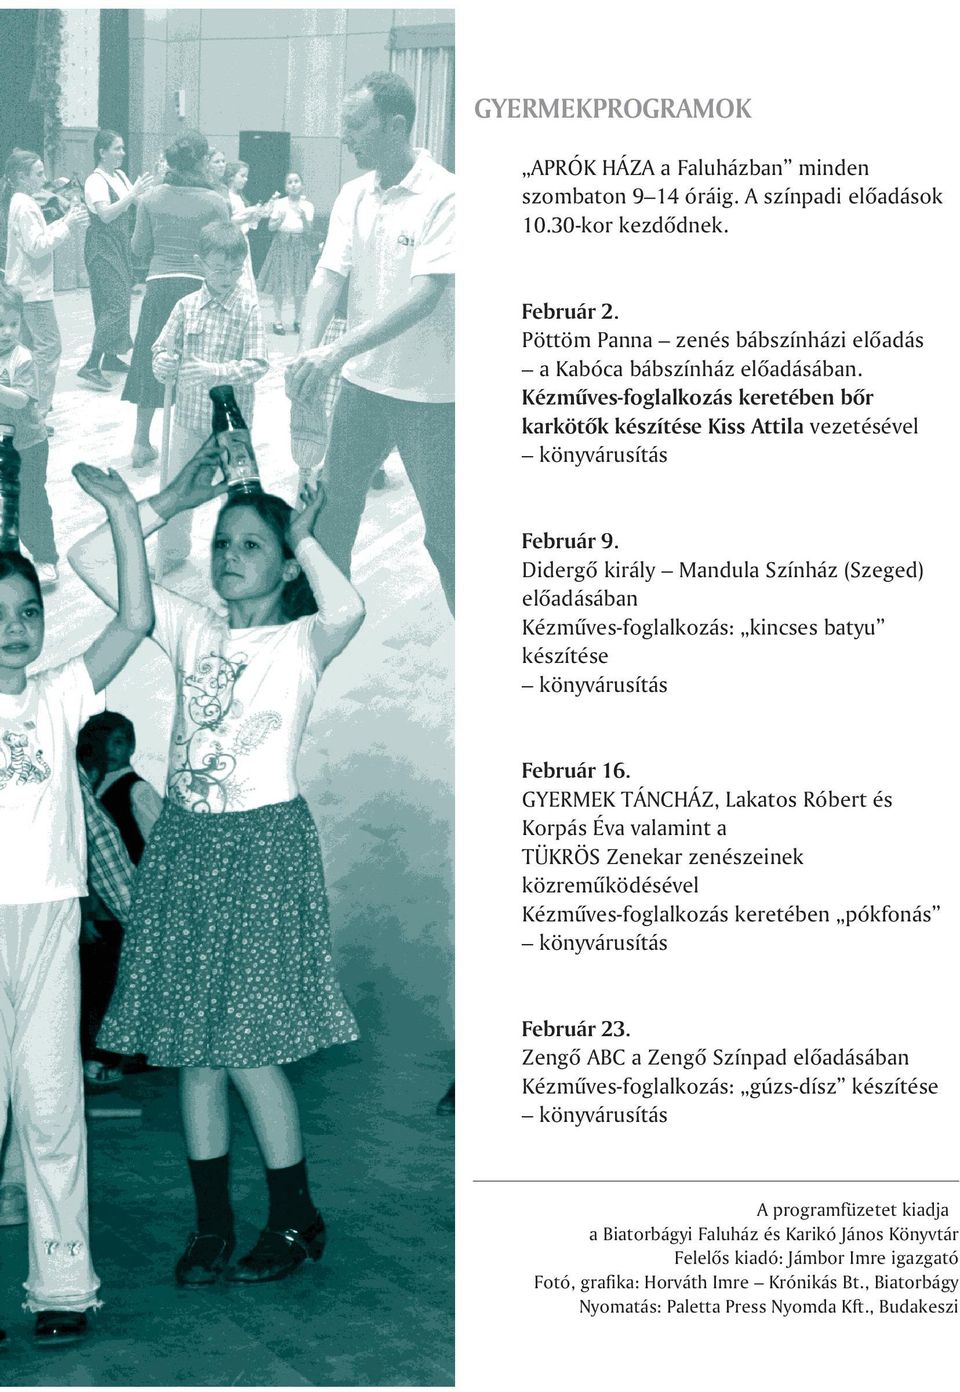 Didergõ király Mandula Színház (Szeged) elõadásában Kézmûves-foglalkozás: kincses batyu készítése könyvárusítás Február 16.